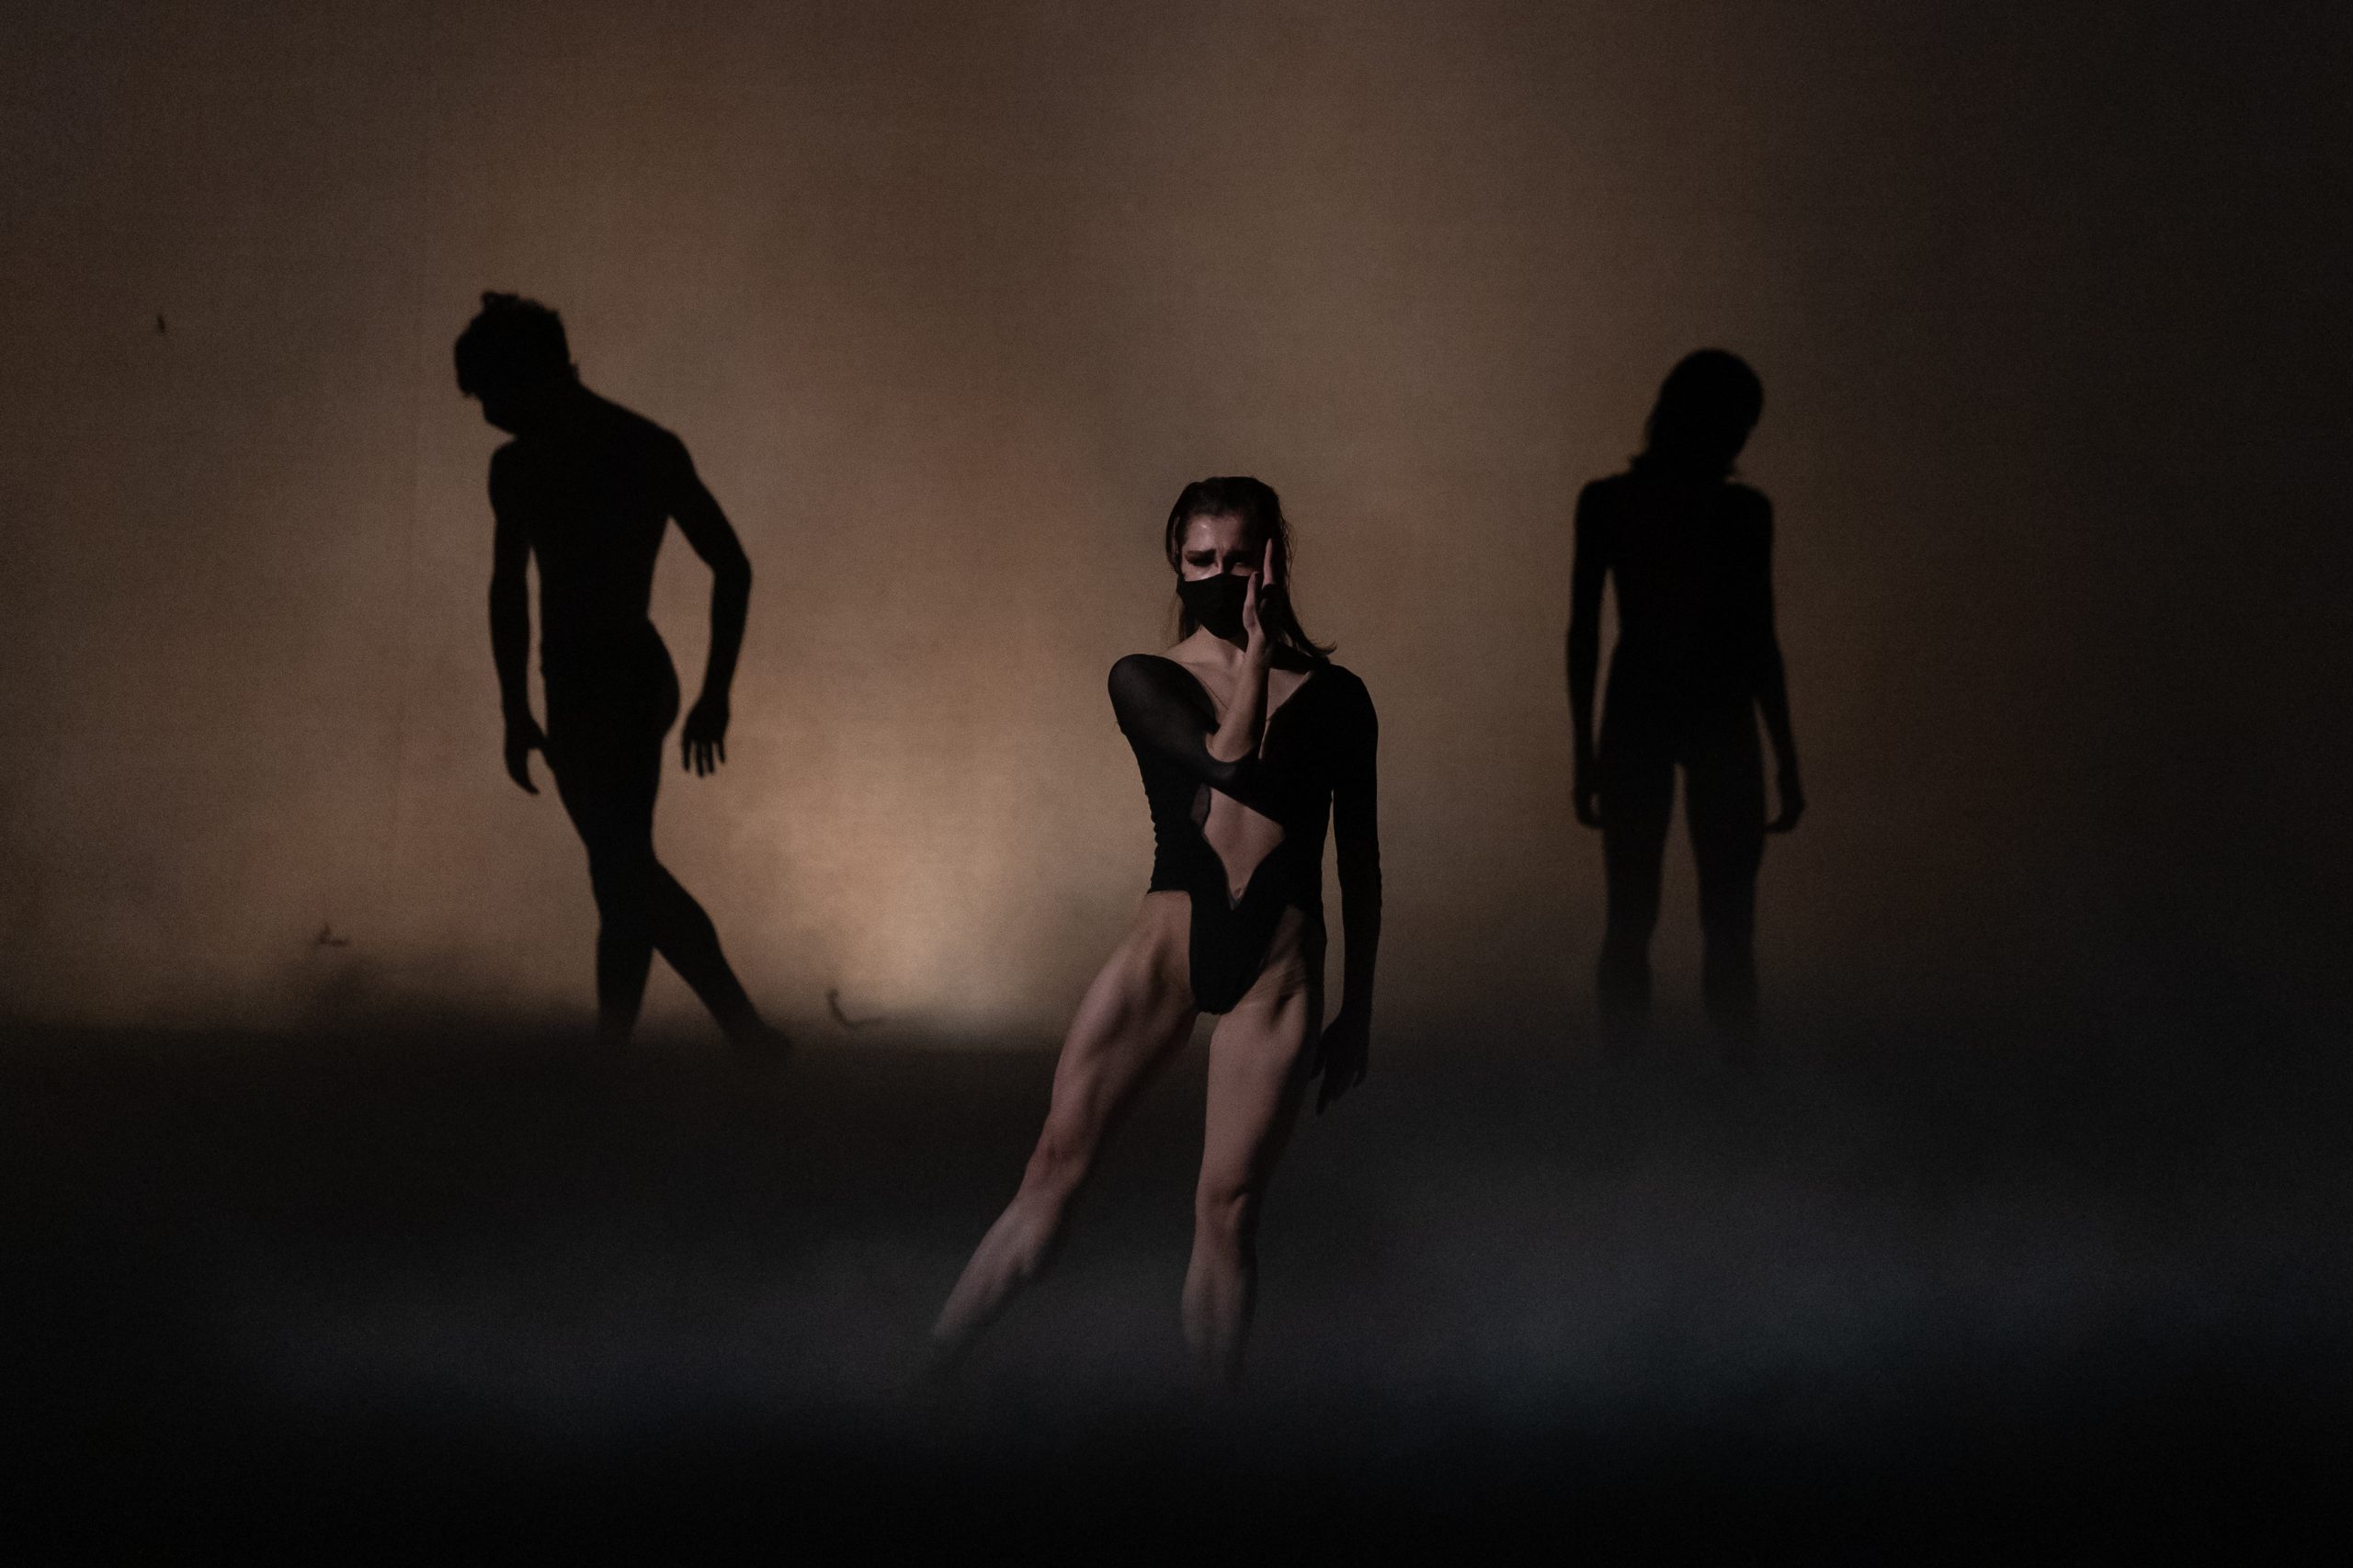 La Compañía Nacional de Danza presentará cuatro obras de autores contemporáneos en Bellas Artes